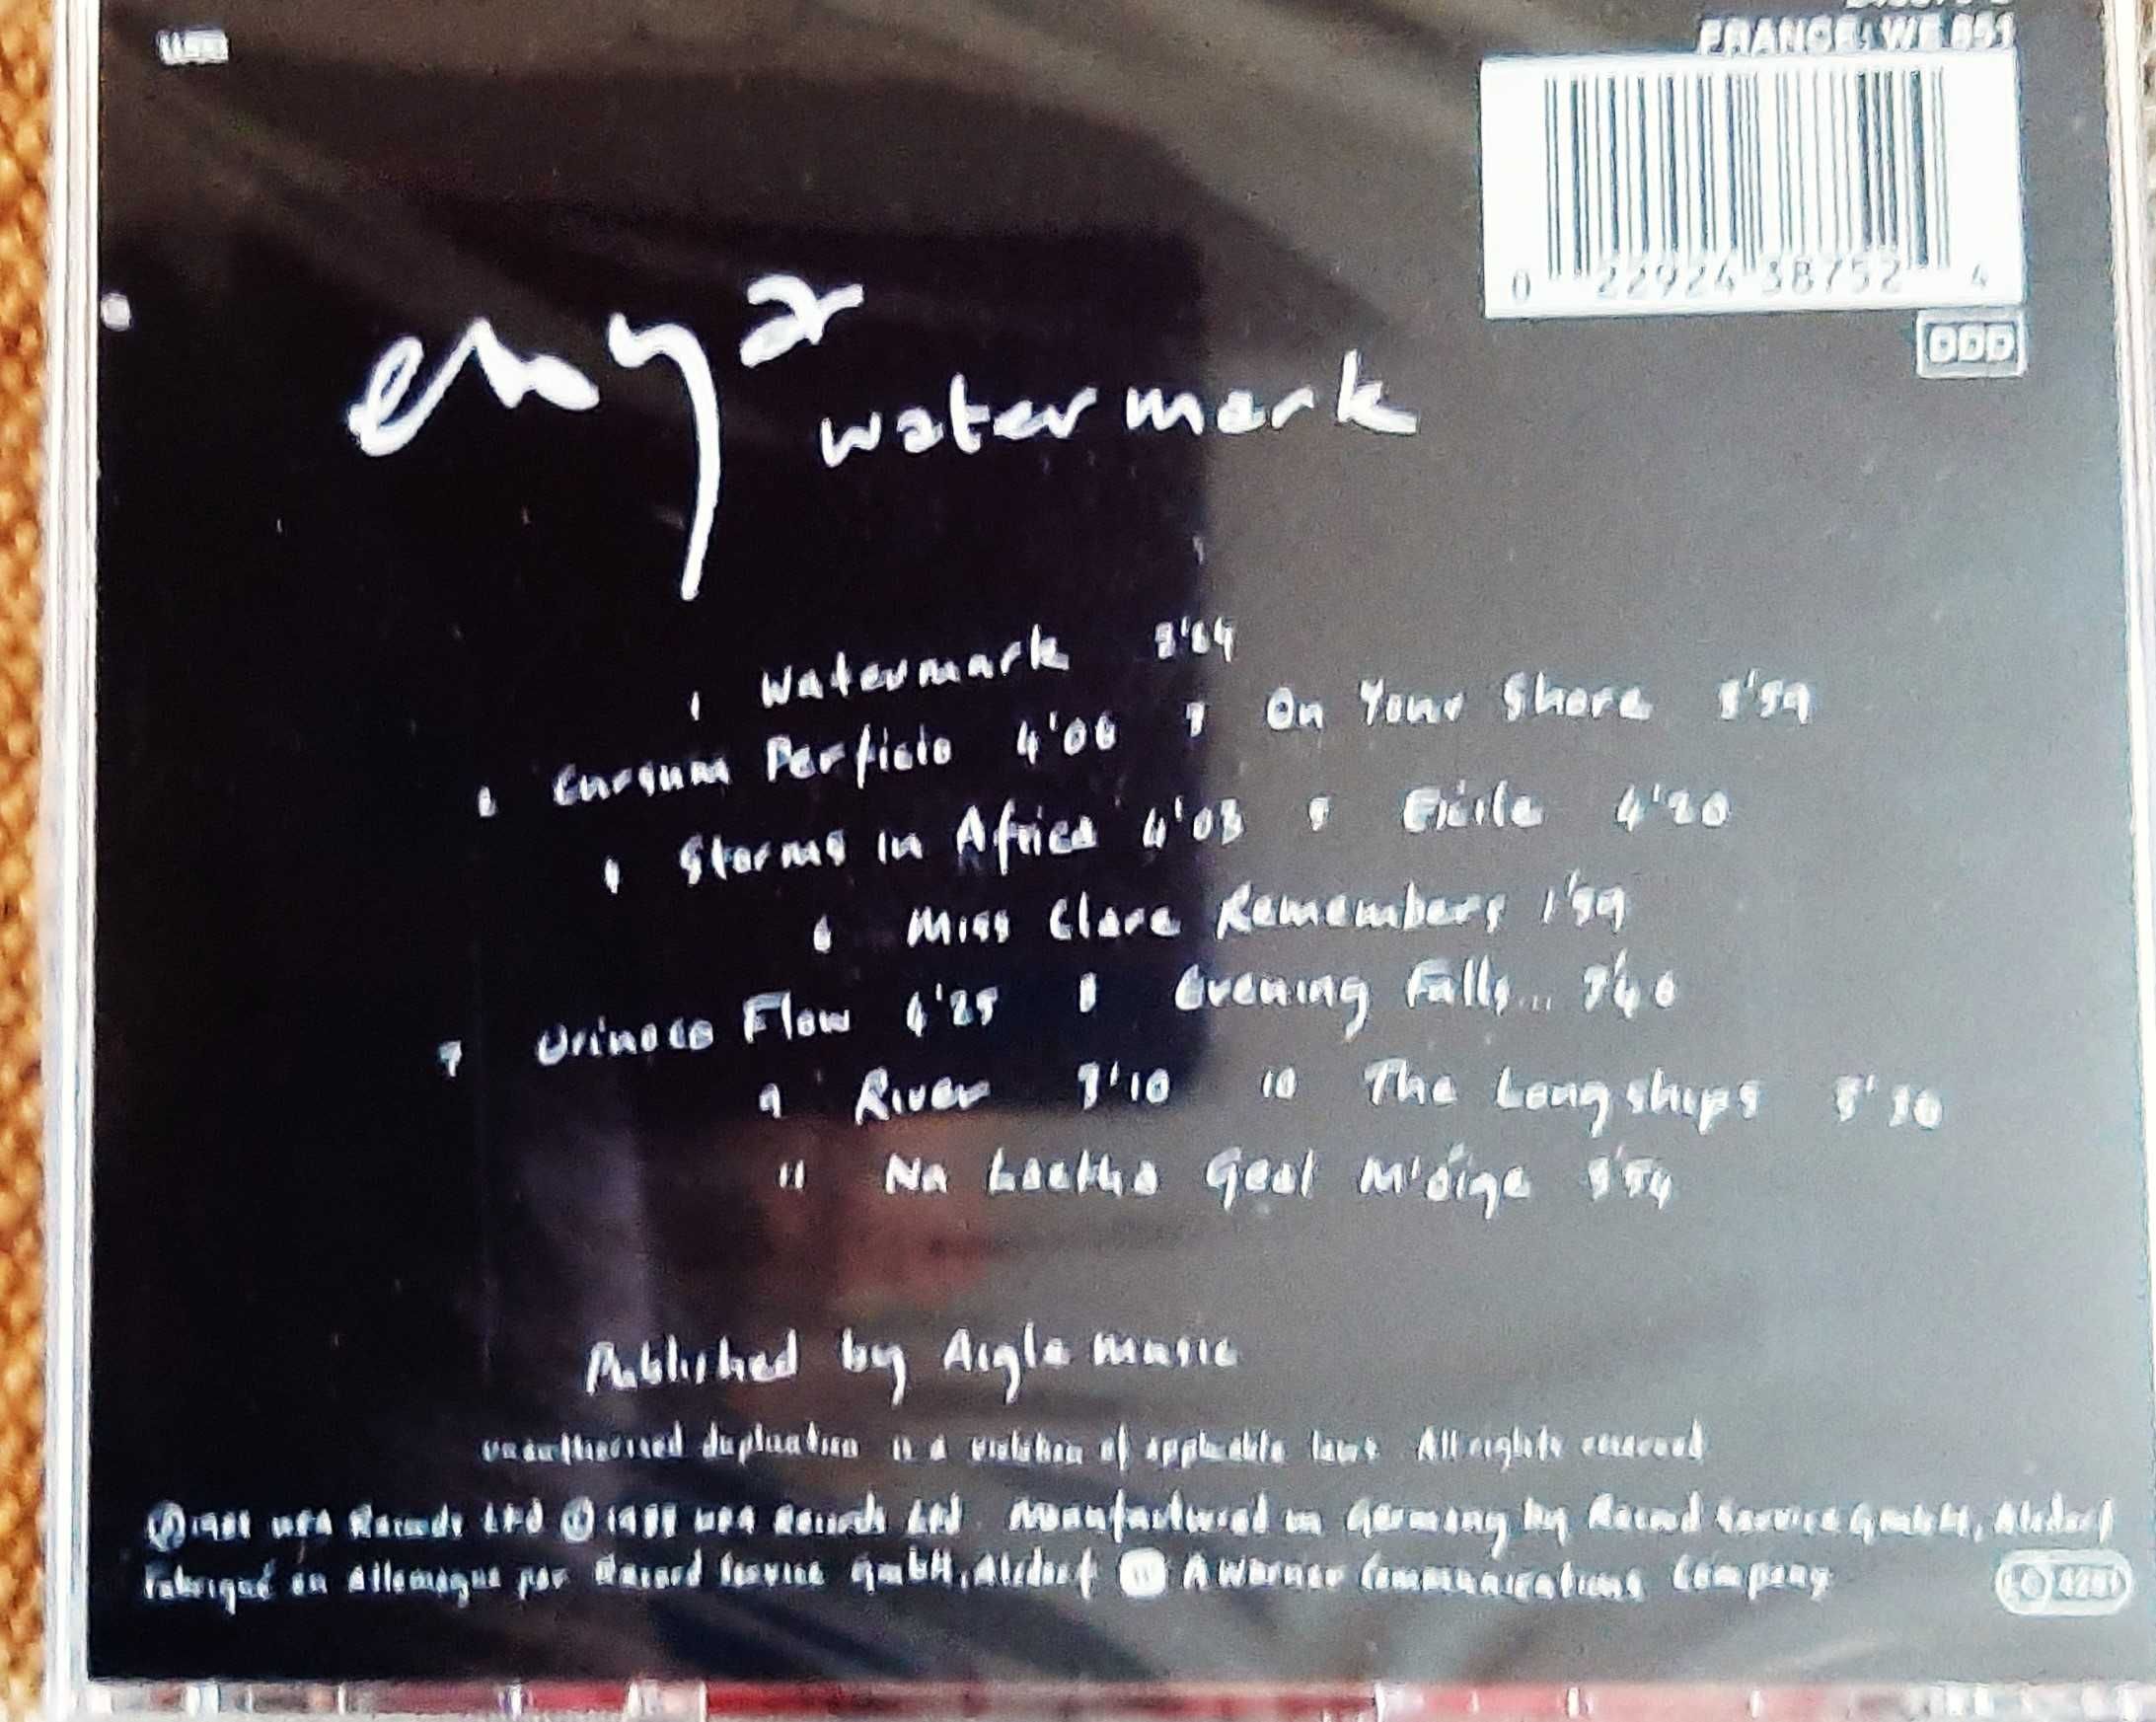 Polecam Wspaniały Album CD - ENYA  -z zespołu CLANNAD - Watermark